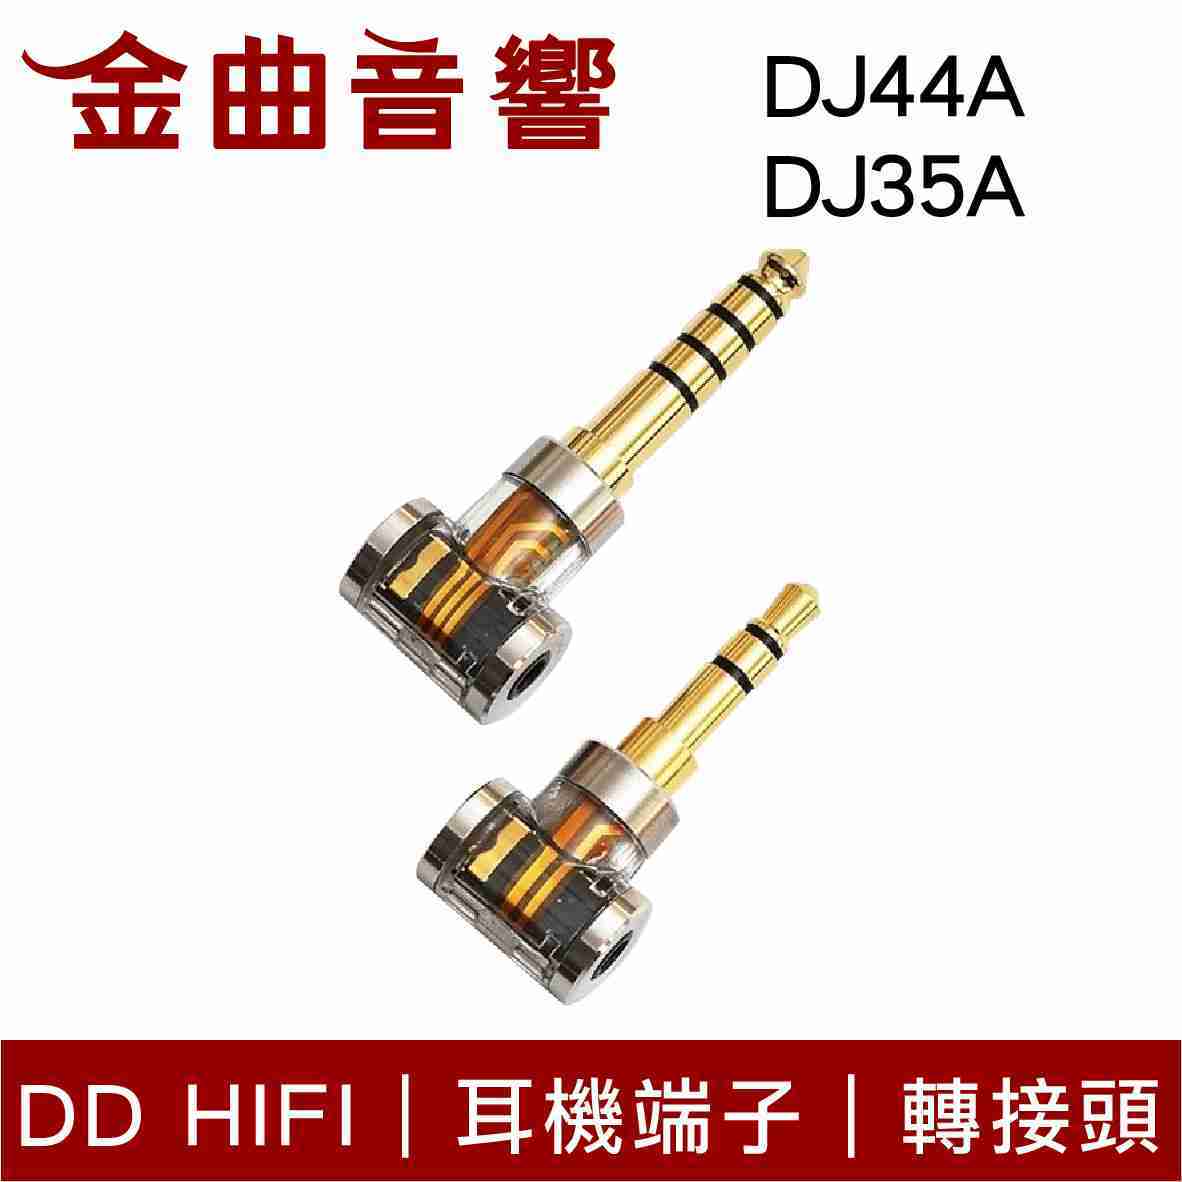 DD Hifi DJ44A / DJ35A /DJ44AG 耳機端子 轉接頭 適用2.5mm平衡接頭 | 金曲音響